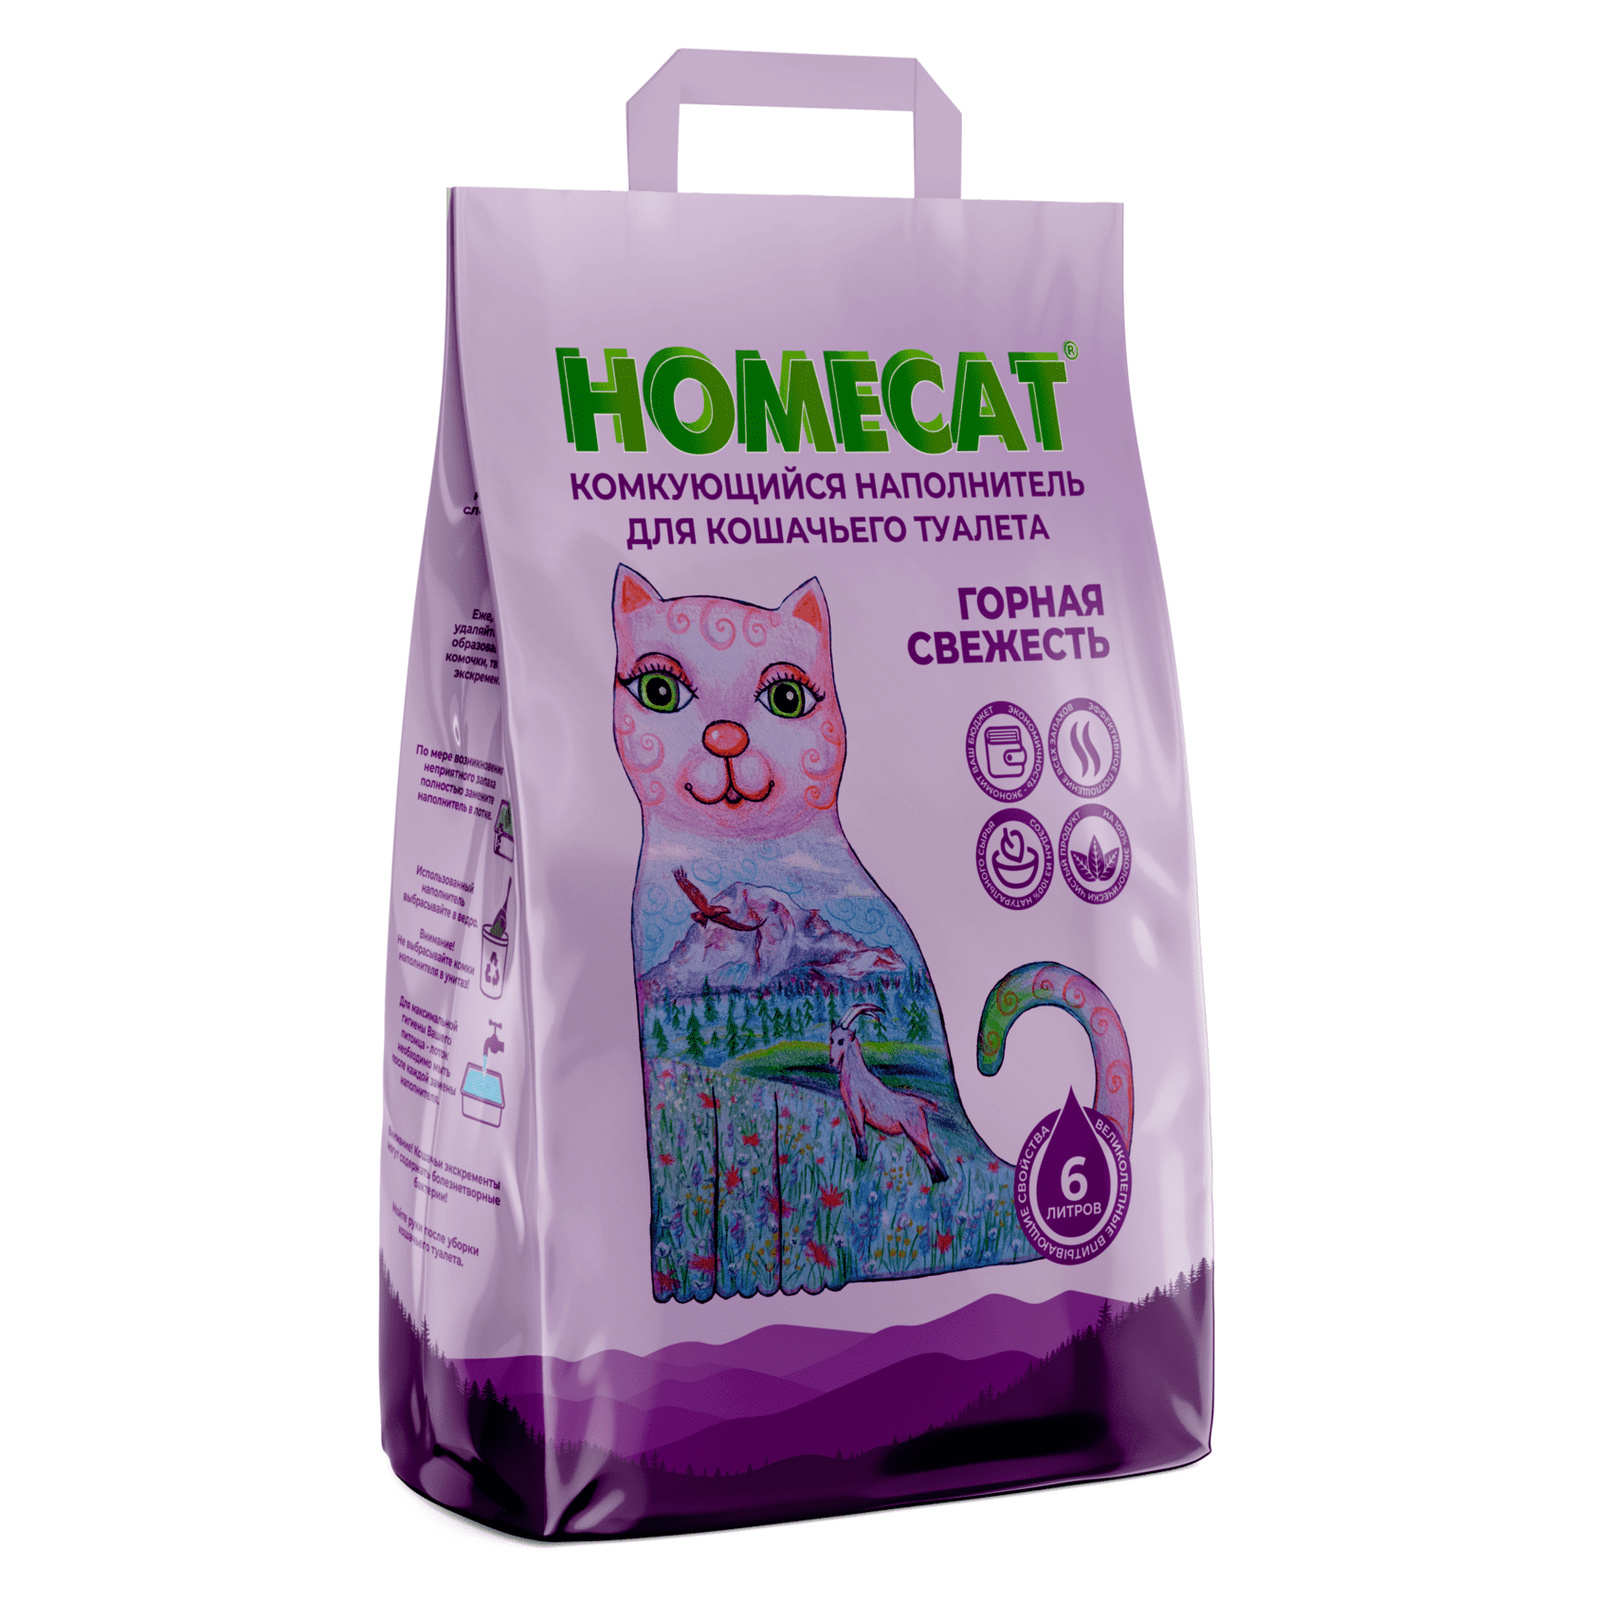 Homecat наполнитель Homecat наполнитель комкующийся наполнитель (10 кг)